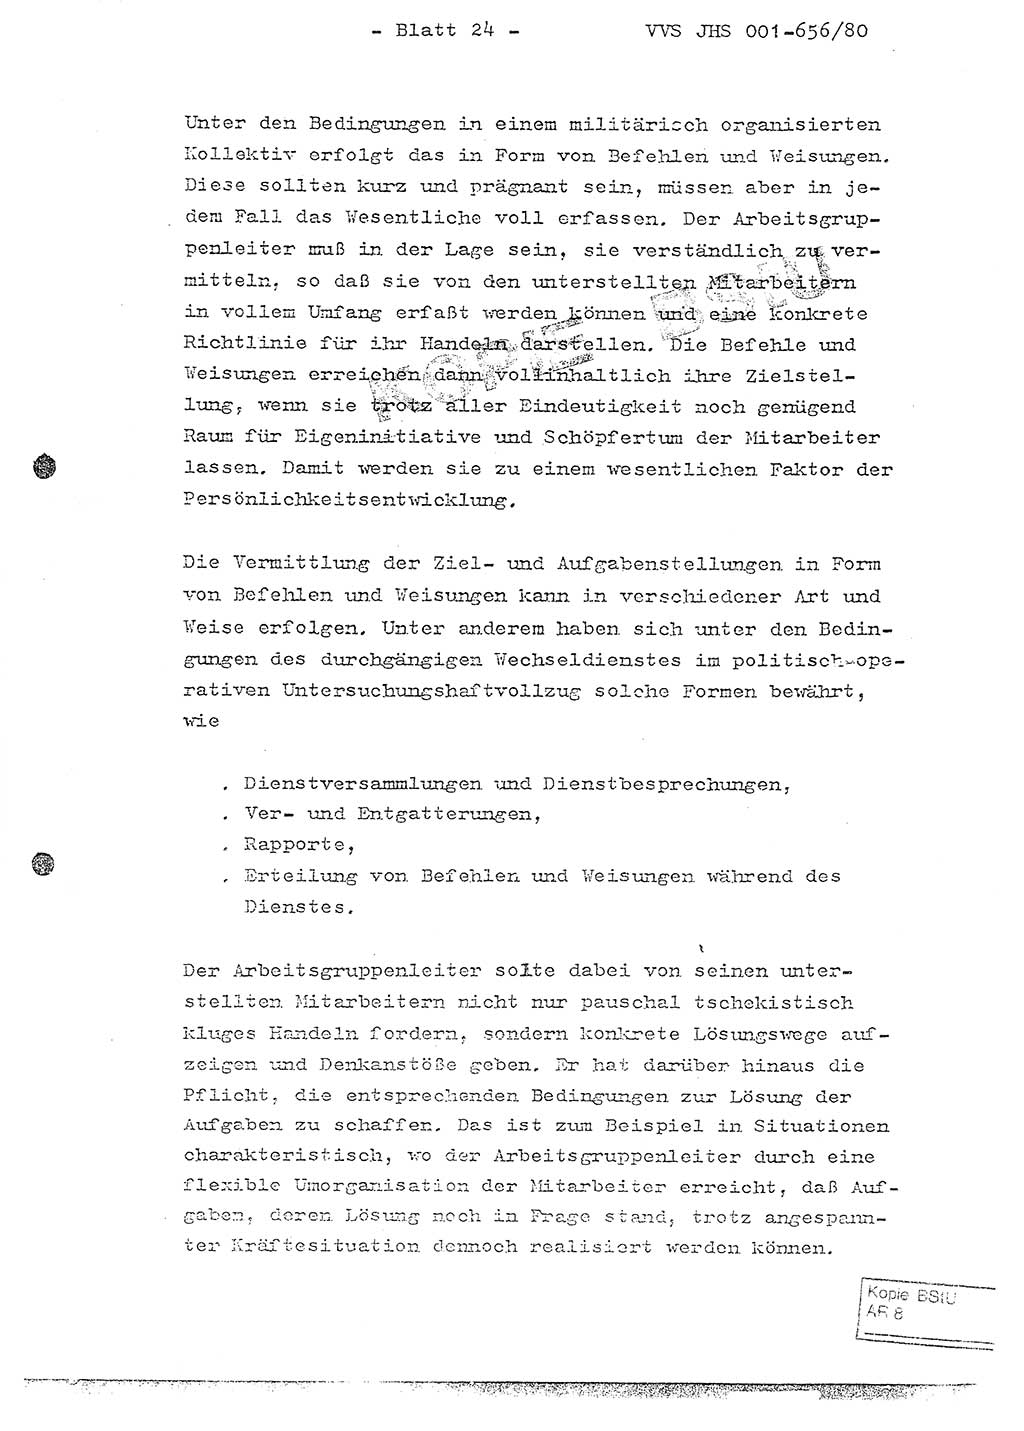 Fachschulabschlußarbeit Unterleutnant Christian Kätzel (Abt. ⅩⅣ), Ministerium für Staatssicherheit (MfS) [Deutsche Demokratische Republik (DDR)], Juristische Hochschule (JHS), Vertrauliche Verschlußsache (VVS) 001-656/80, Potsdam 1980, Blatt 24 (FS-Abschl.-Arb. MfS DDR JHS VVS 001-656/80 1980, Bl. 24)